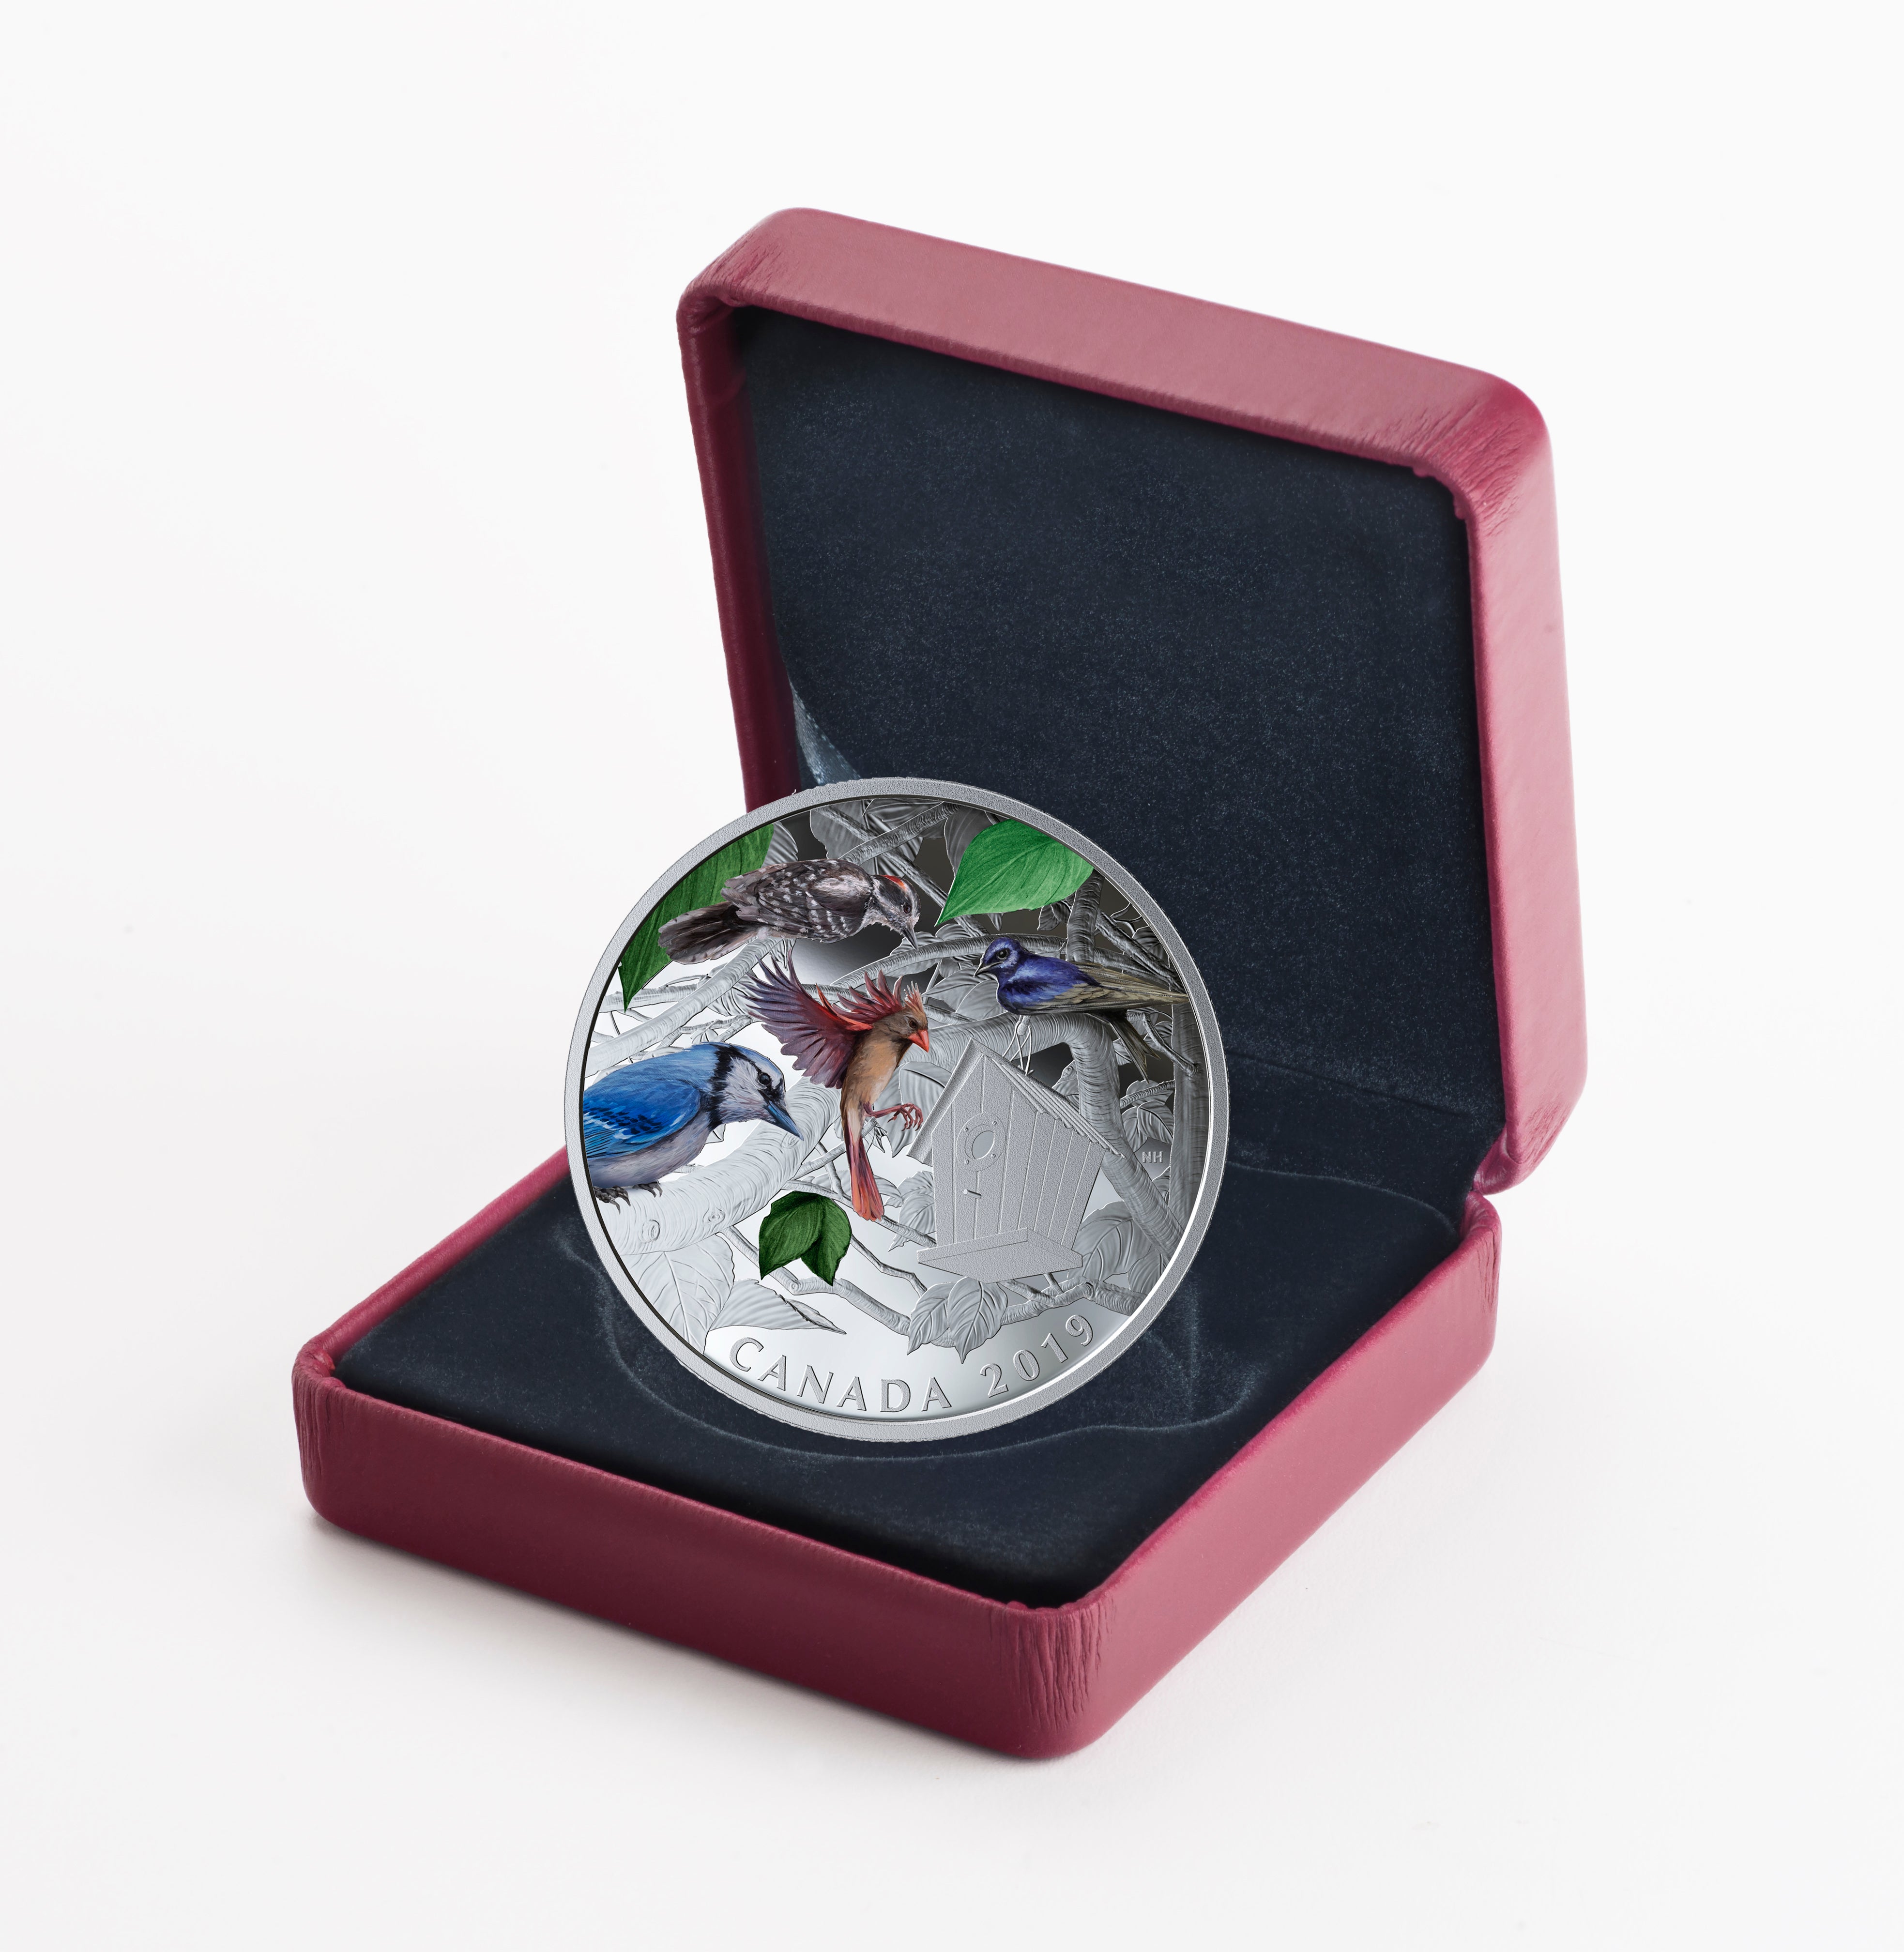 BIRDS IN THE BACKYARD 2 Oz Silver Coin $30 Canada 2019